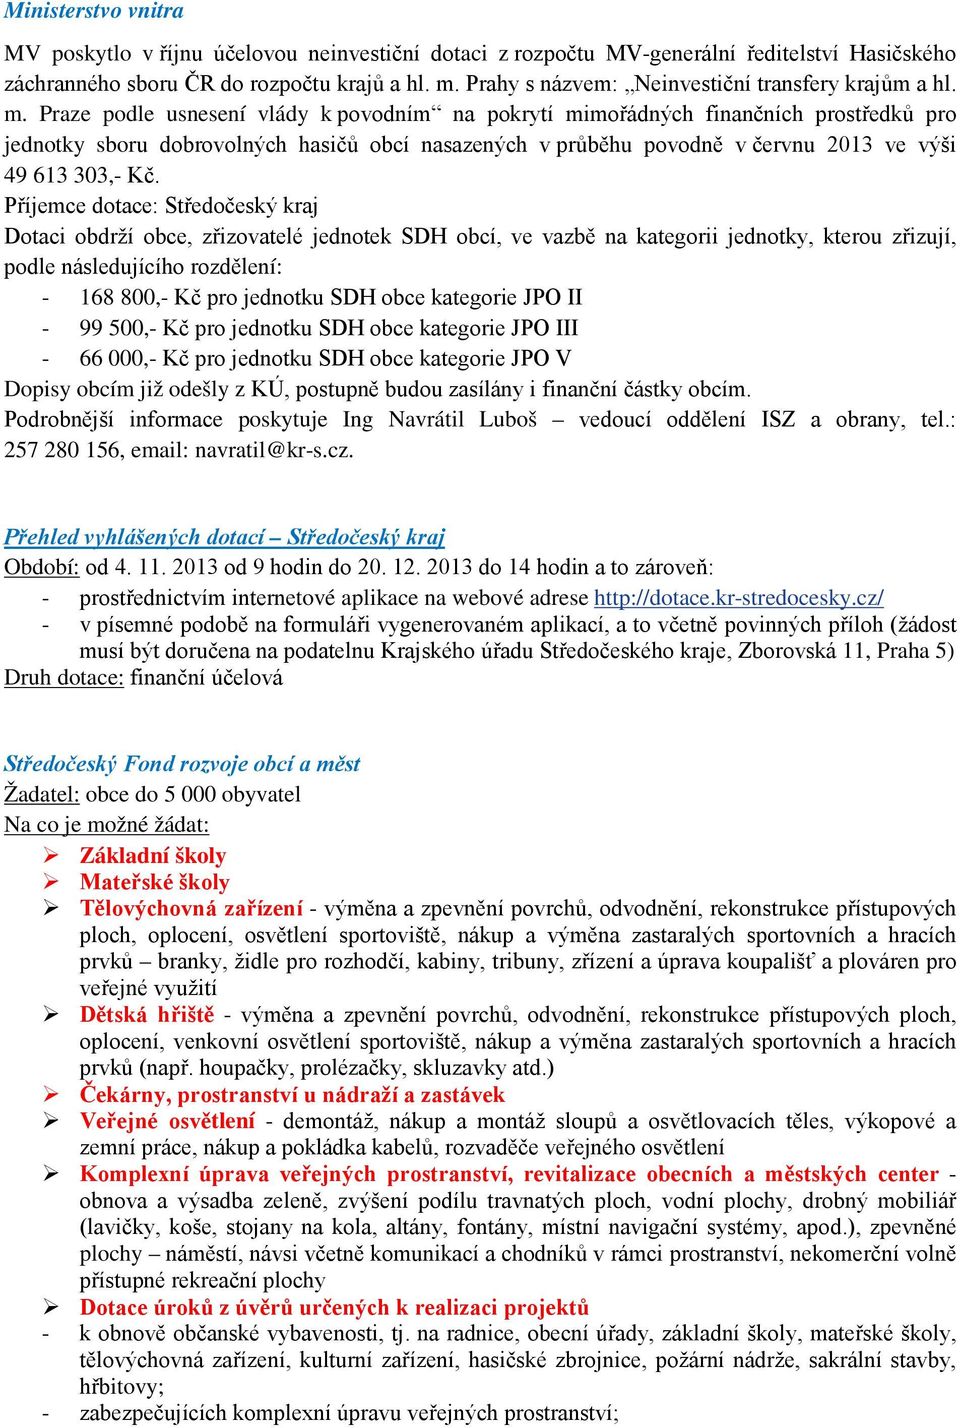 Praze podle usnesení vlády k povodním na pokrytí mimořádných finančních prostředků pro jednotky sboru dobrovolných hasičů obcí nasazených v průběhu povodně v červnu 2013 ve výši 49 613 303,- Kč.